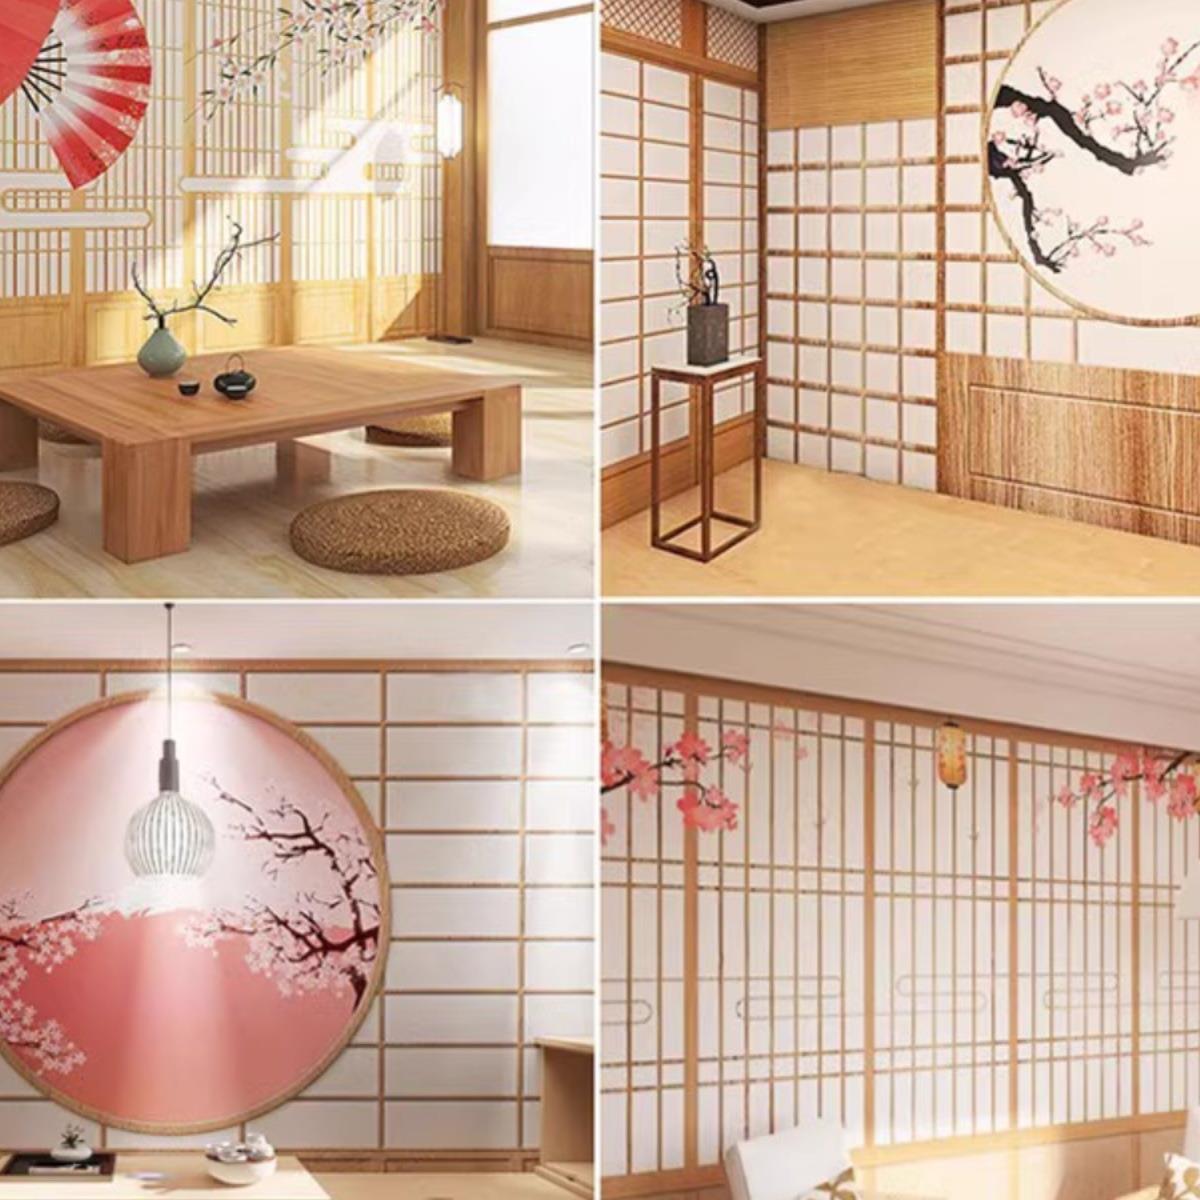 日本浪漫和风樱花图案墙纸富士山风景墙布日式寿司火锅店装修壁纸